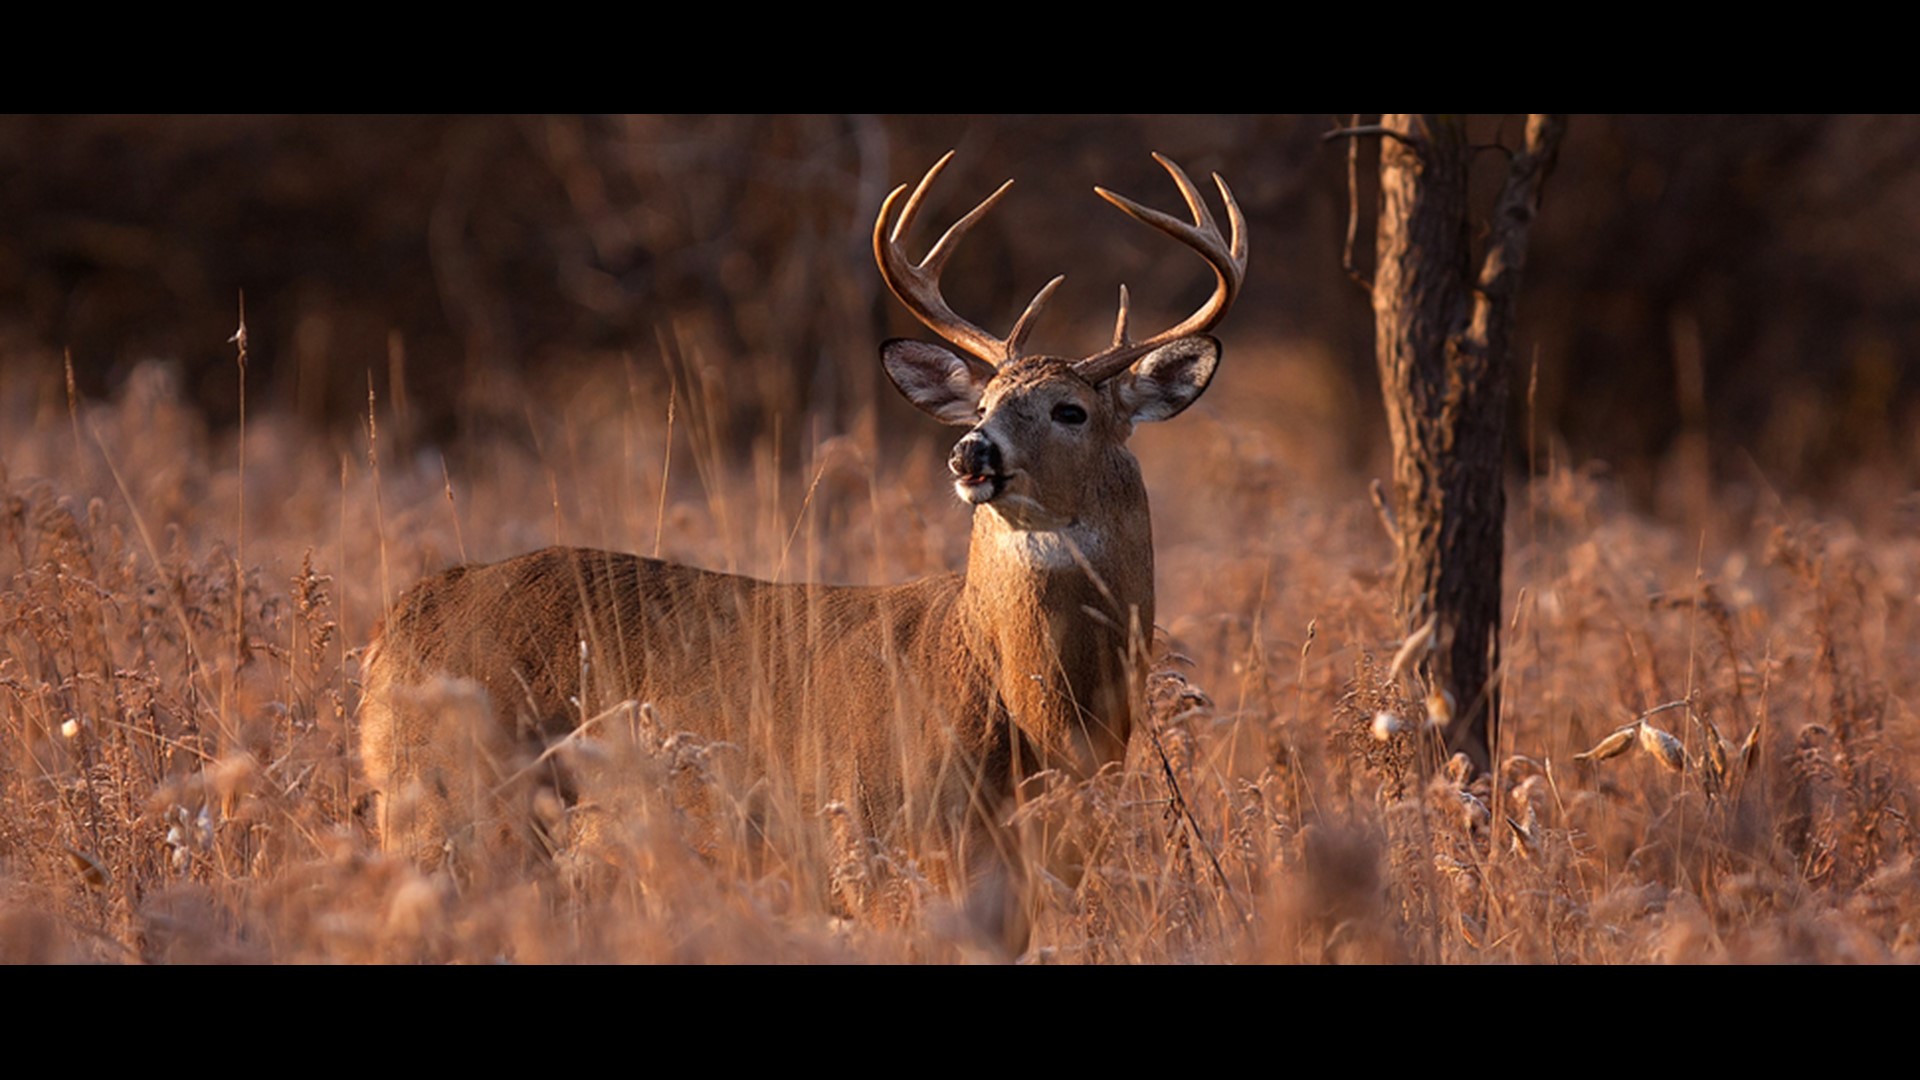 Indiana state park closures set for 4 days of deer hunts